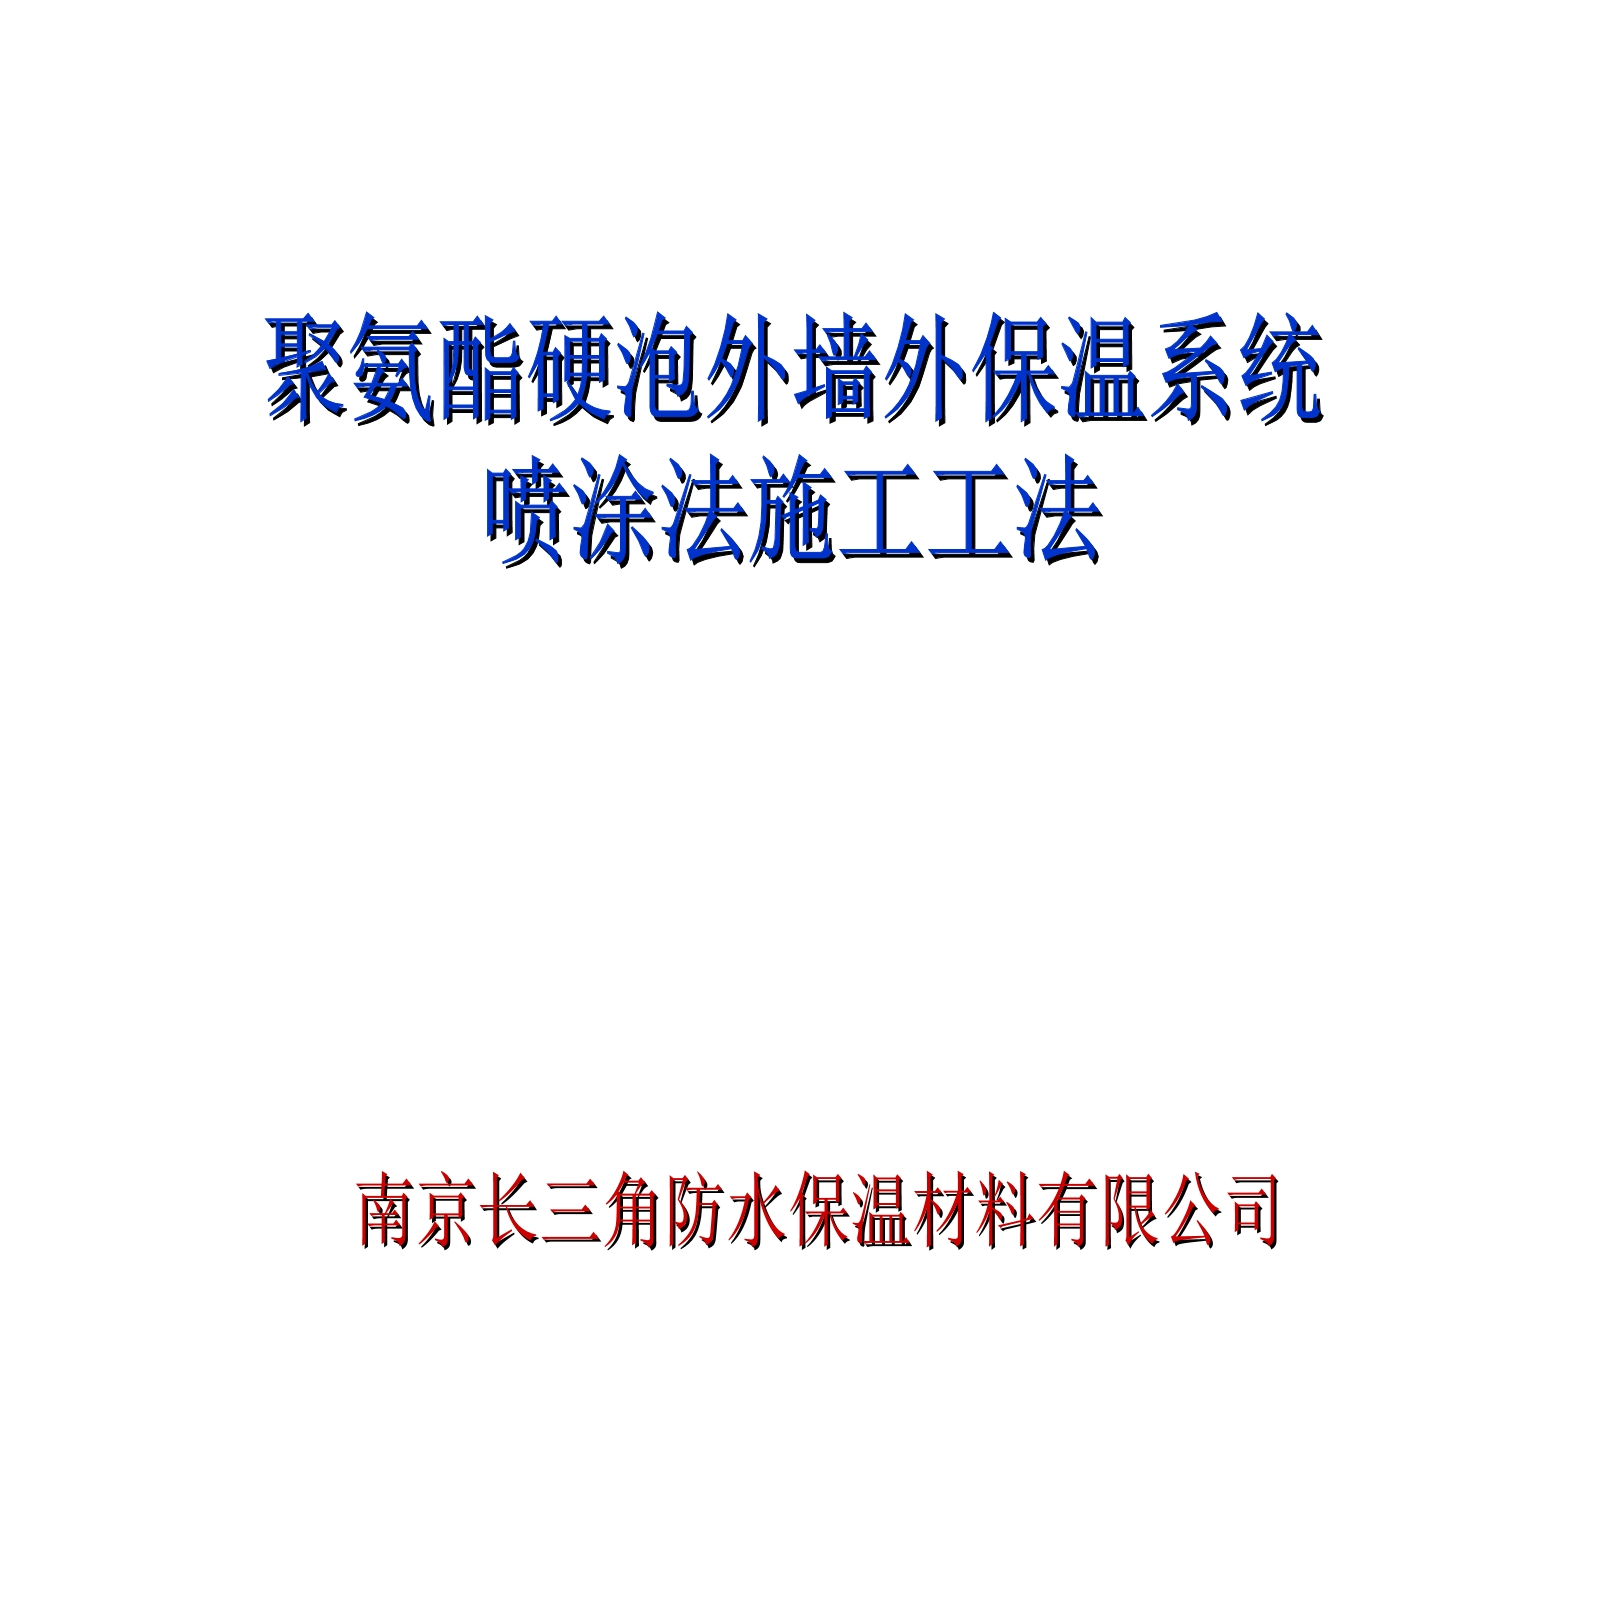 南京长三角防水保温材料有限公司